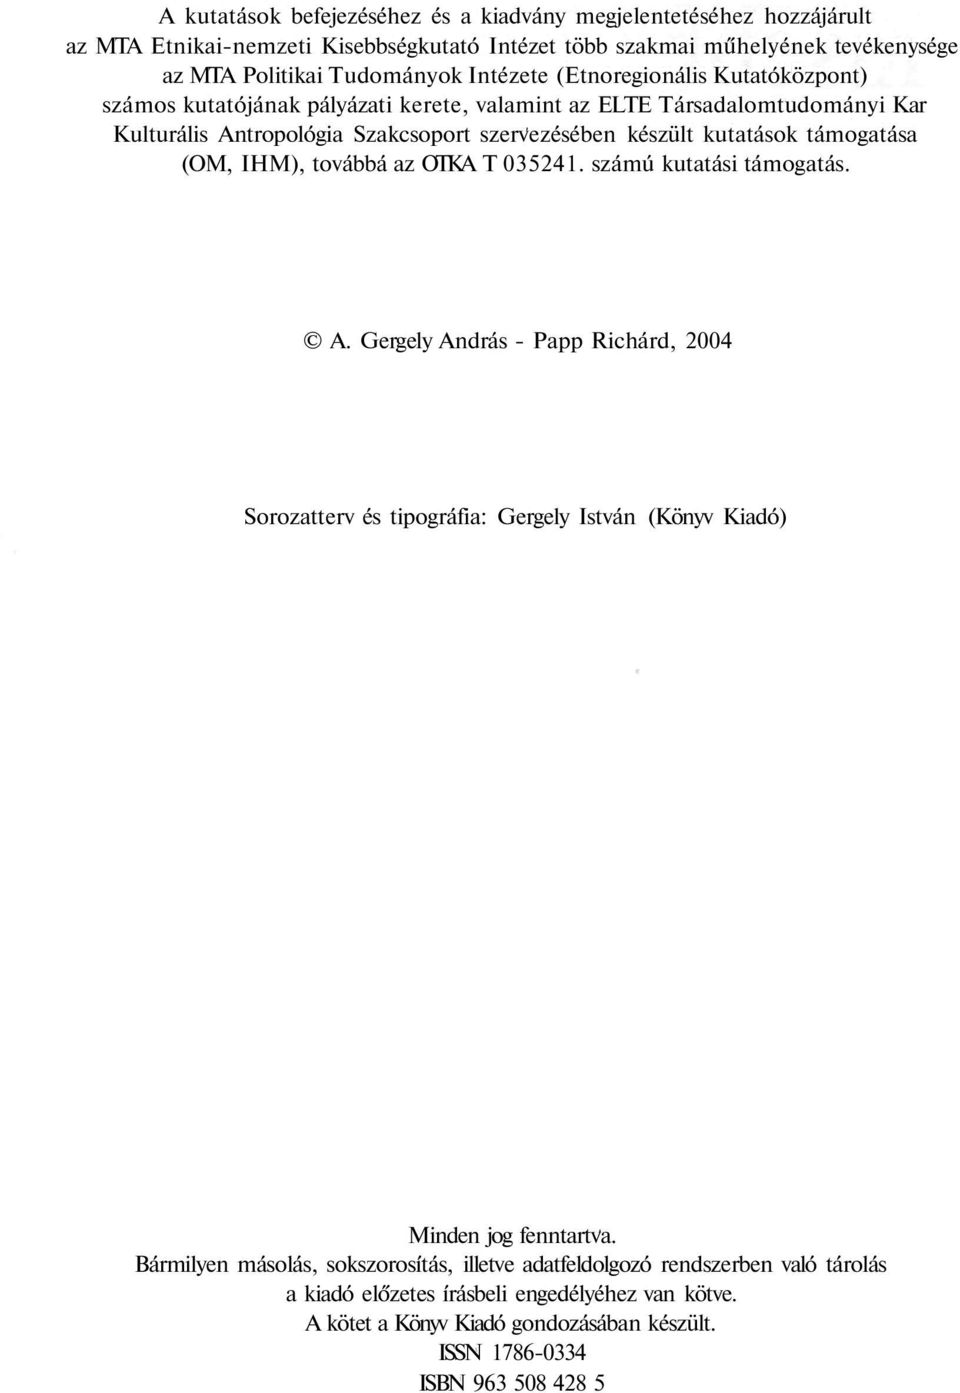 IHM), továbbá az OTKA T 035241. számú kutatási támogatás. A. Gergely András - Papp Richárd, 2004 Sorozatterv és tipográfia: Gergely István (Könyv Kiadó) Minden jog fenntartva.